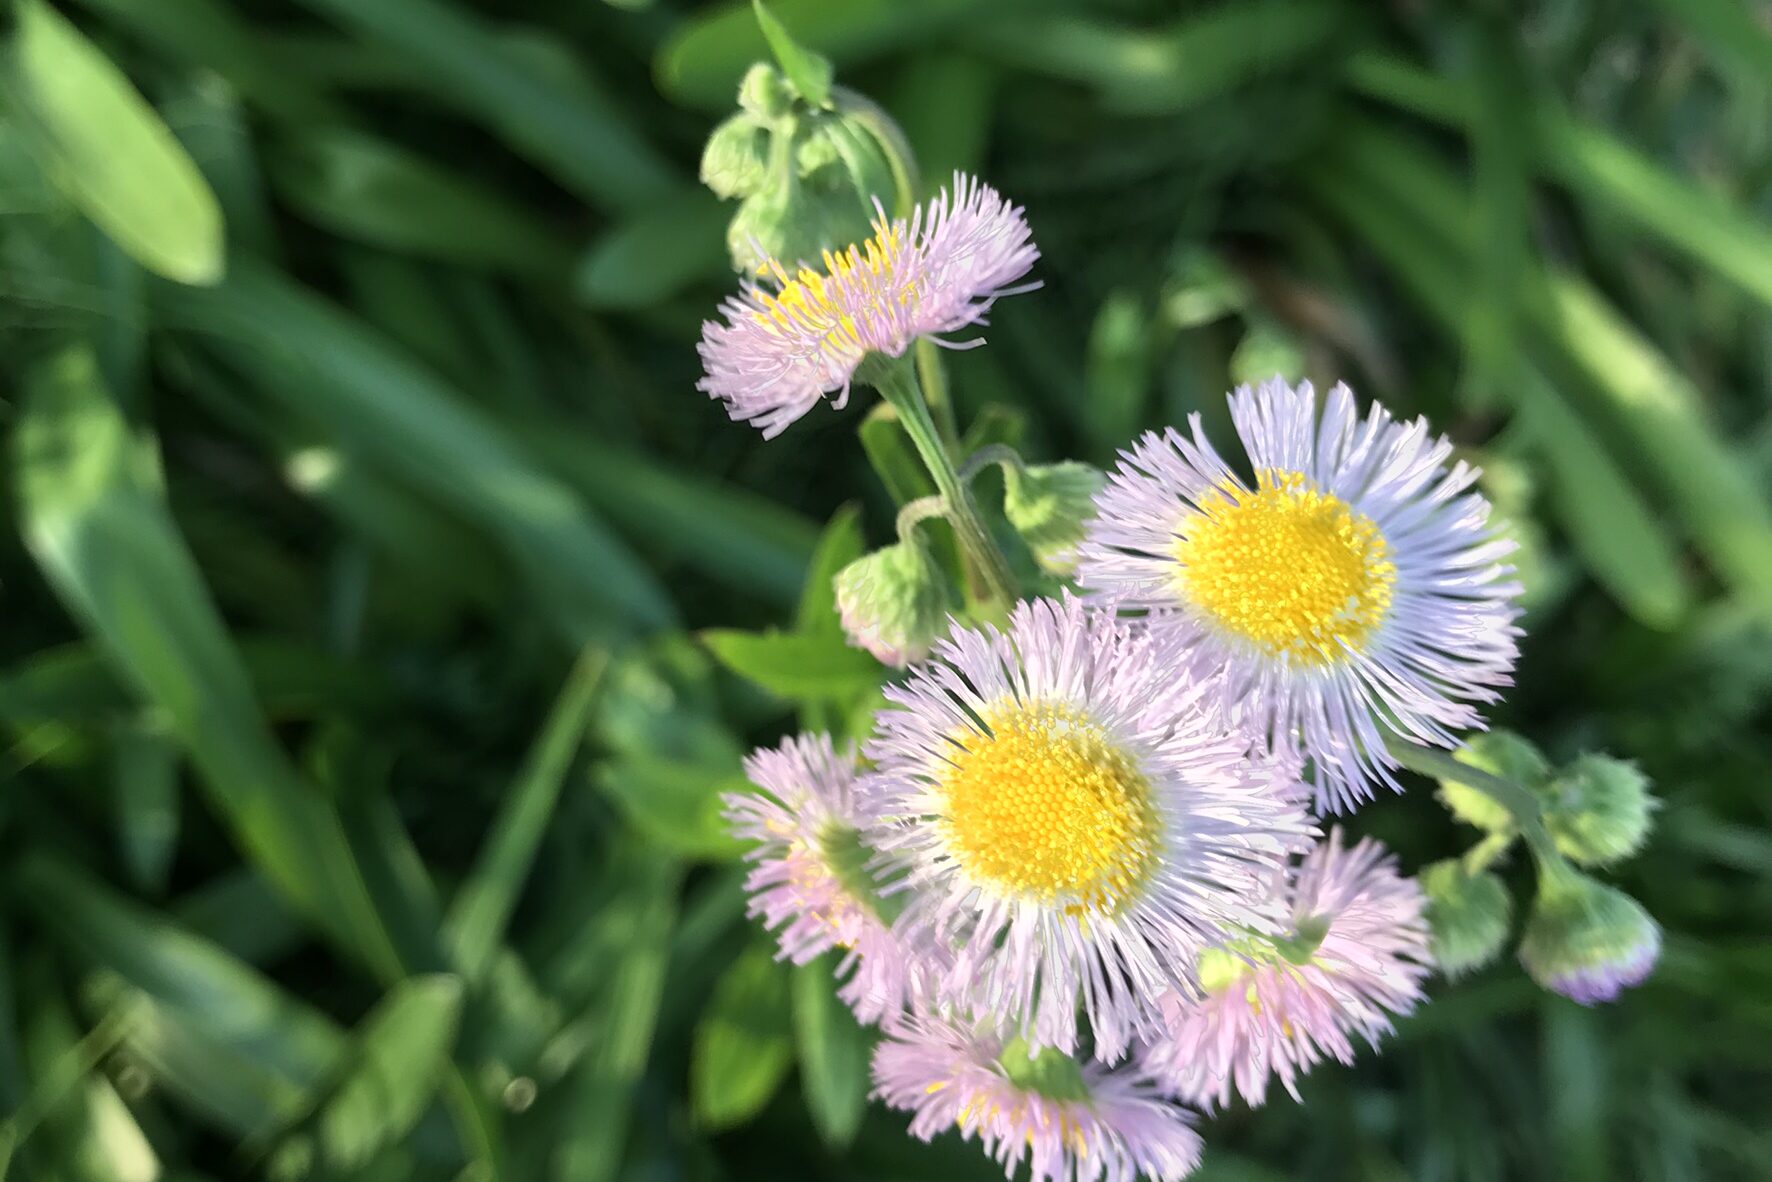 ハルジオン 春紫苑 とヒメジョオン 姫女苑 の違いを簡単に見分ける方法 鏡花水月 花つむぎ